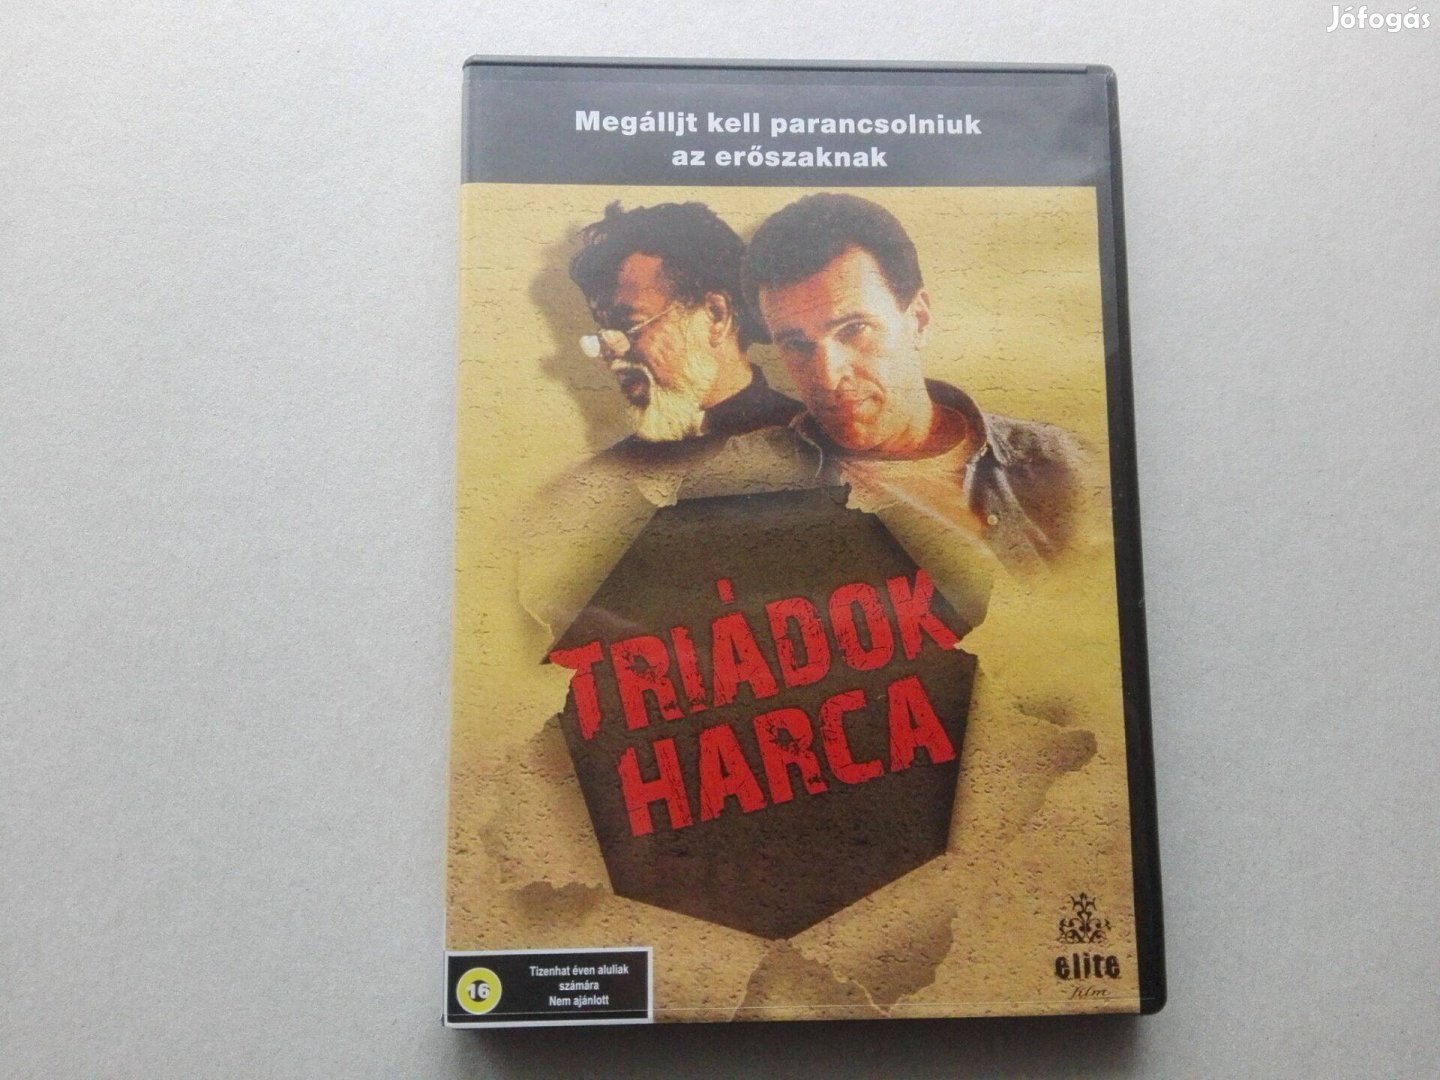 Triádok harca című új, eredeti DVD film (magyar)eladó !